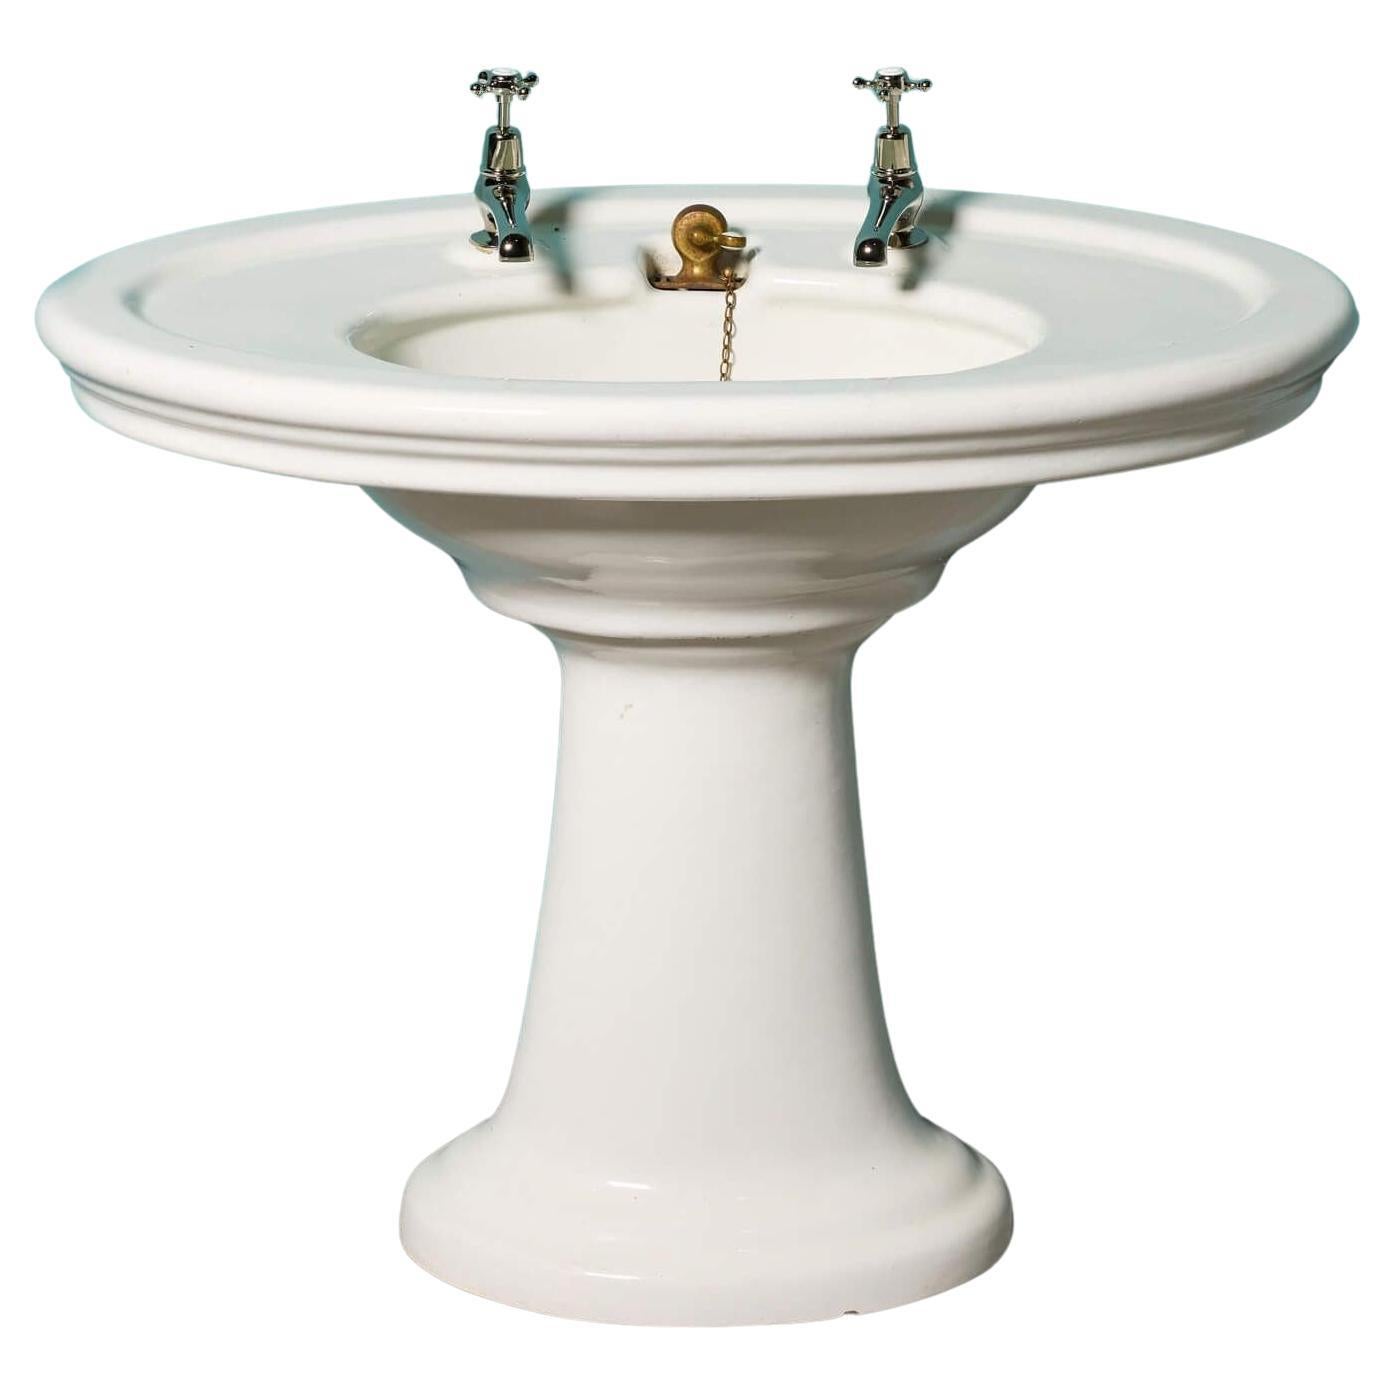 Antique Oval Shaped Pedestal Sink For Sale